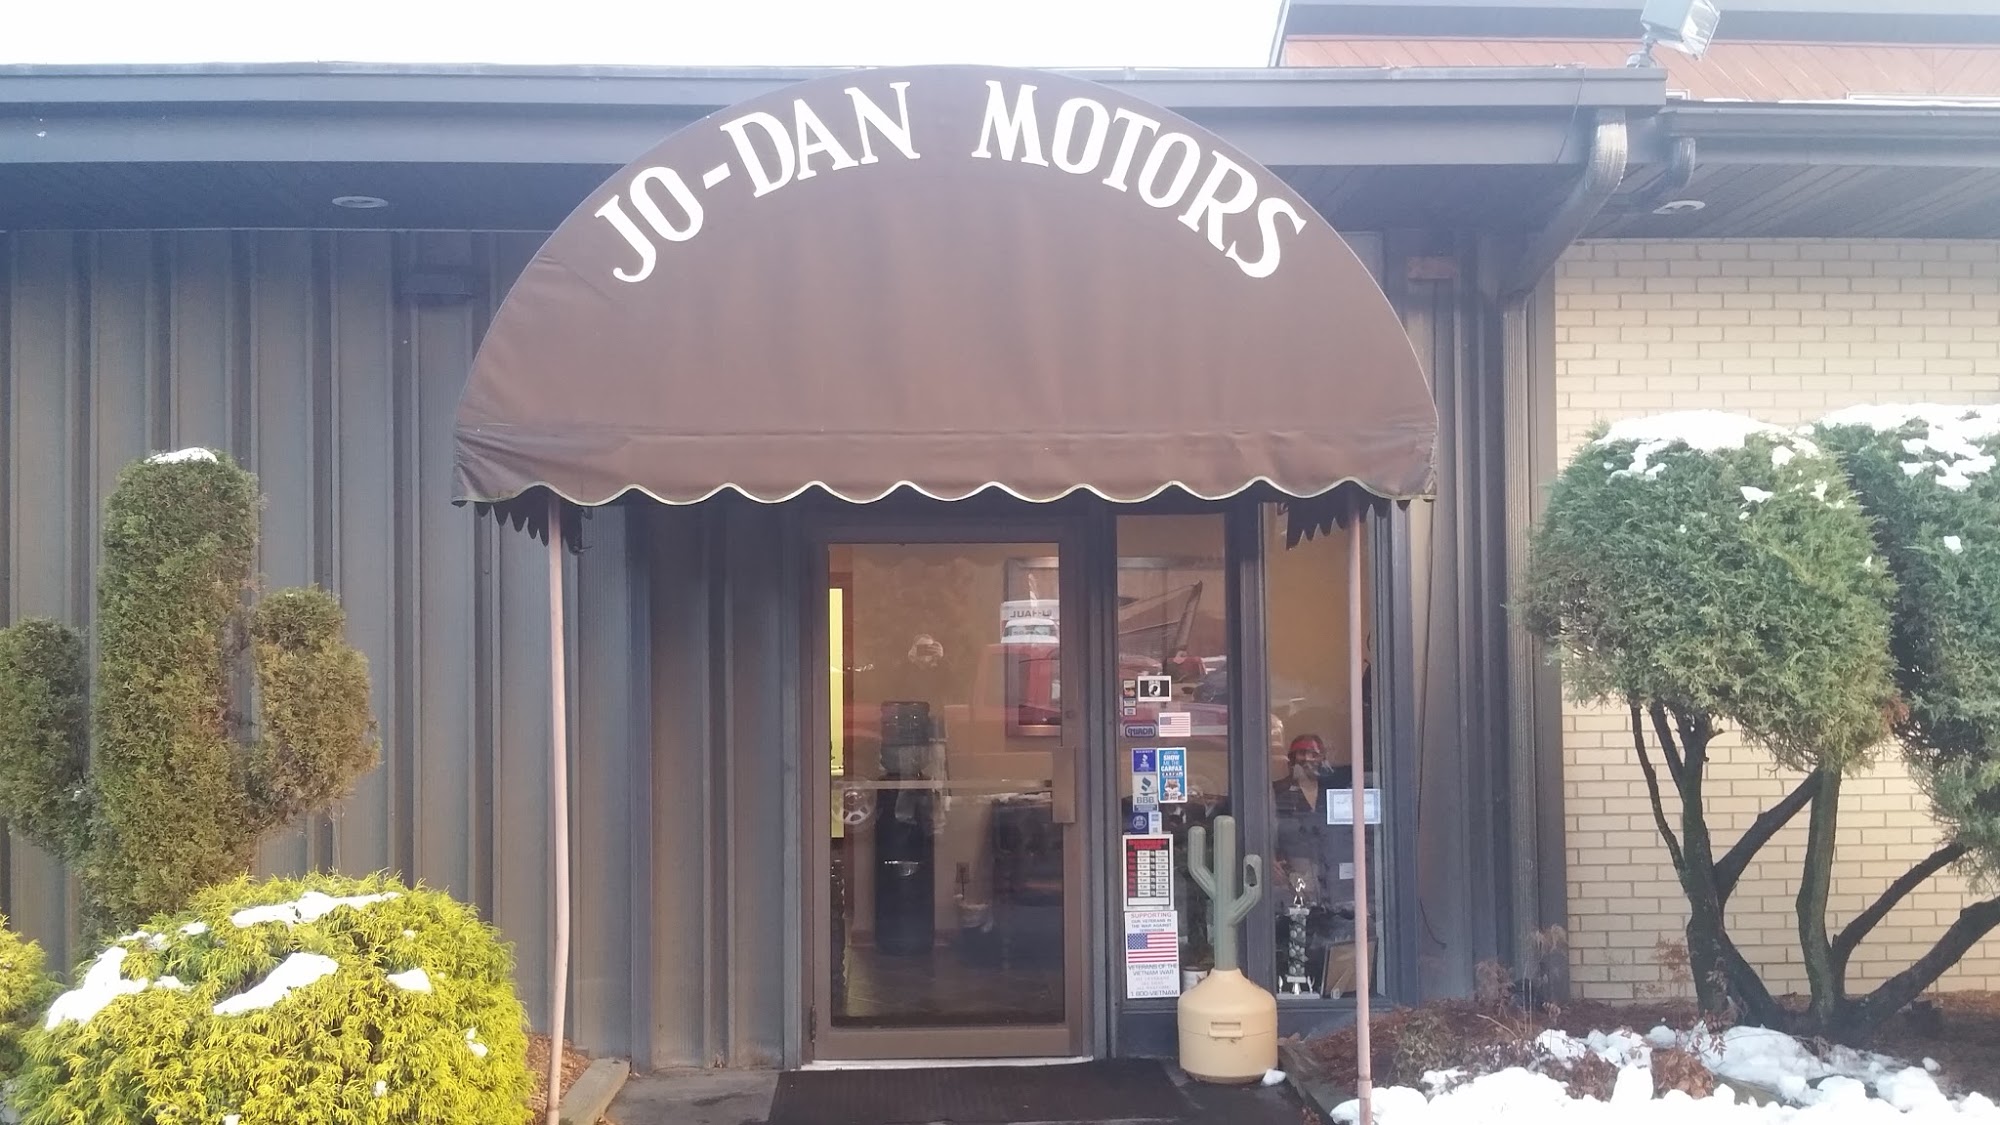 Jo-Dan Motors